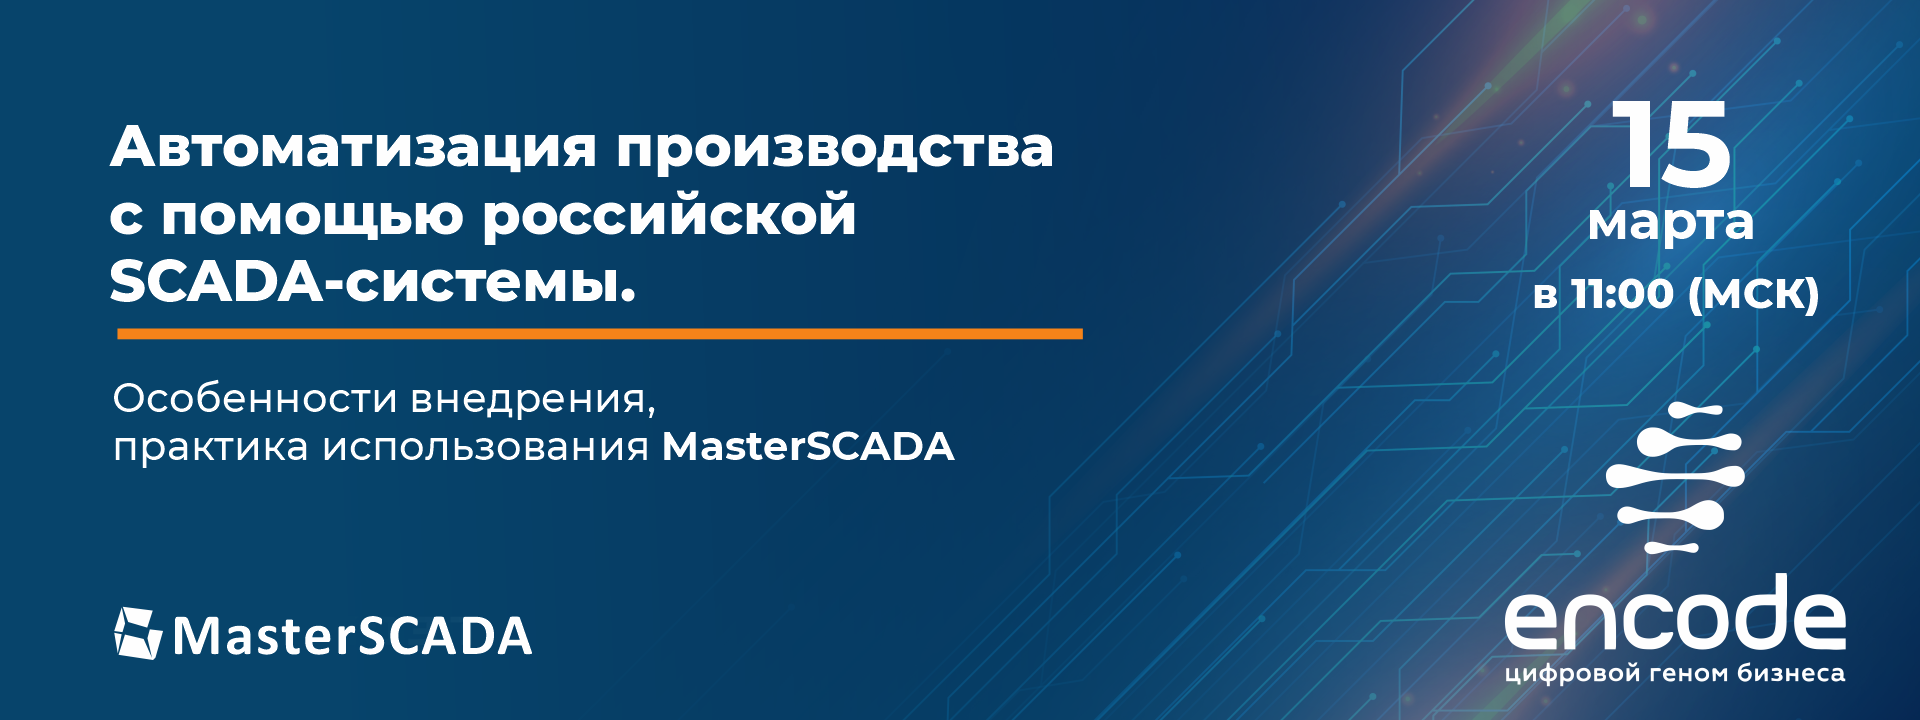 пройдет вебинар «Автоматизация производства с помощью российской SCADA-системы»